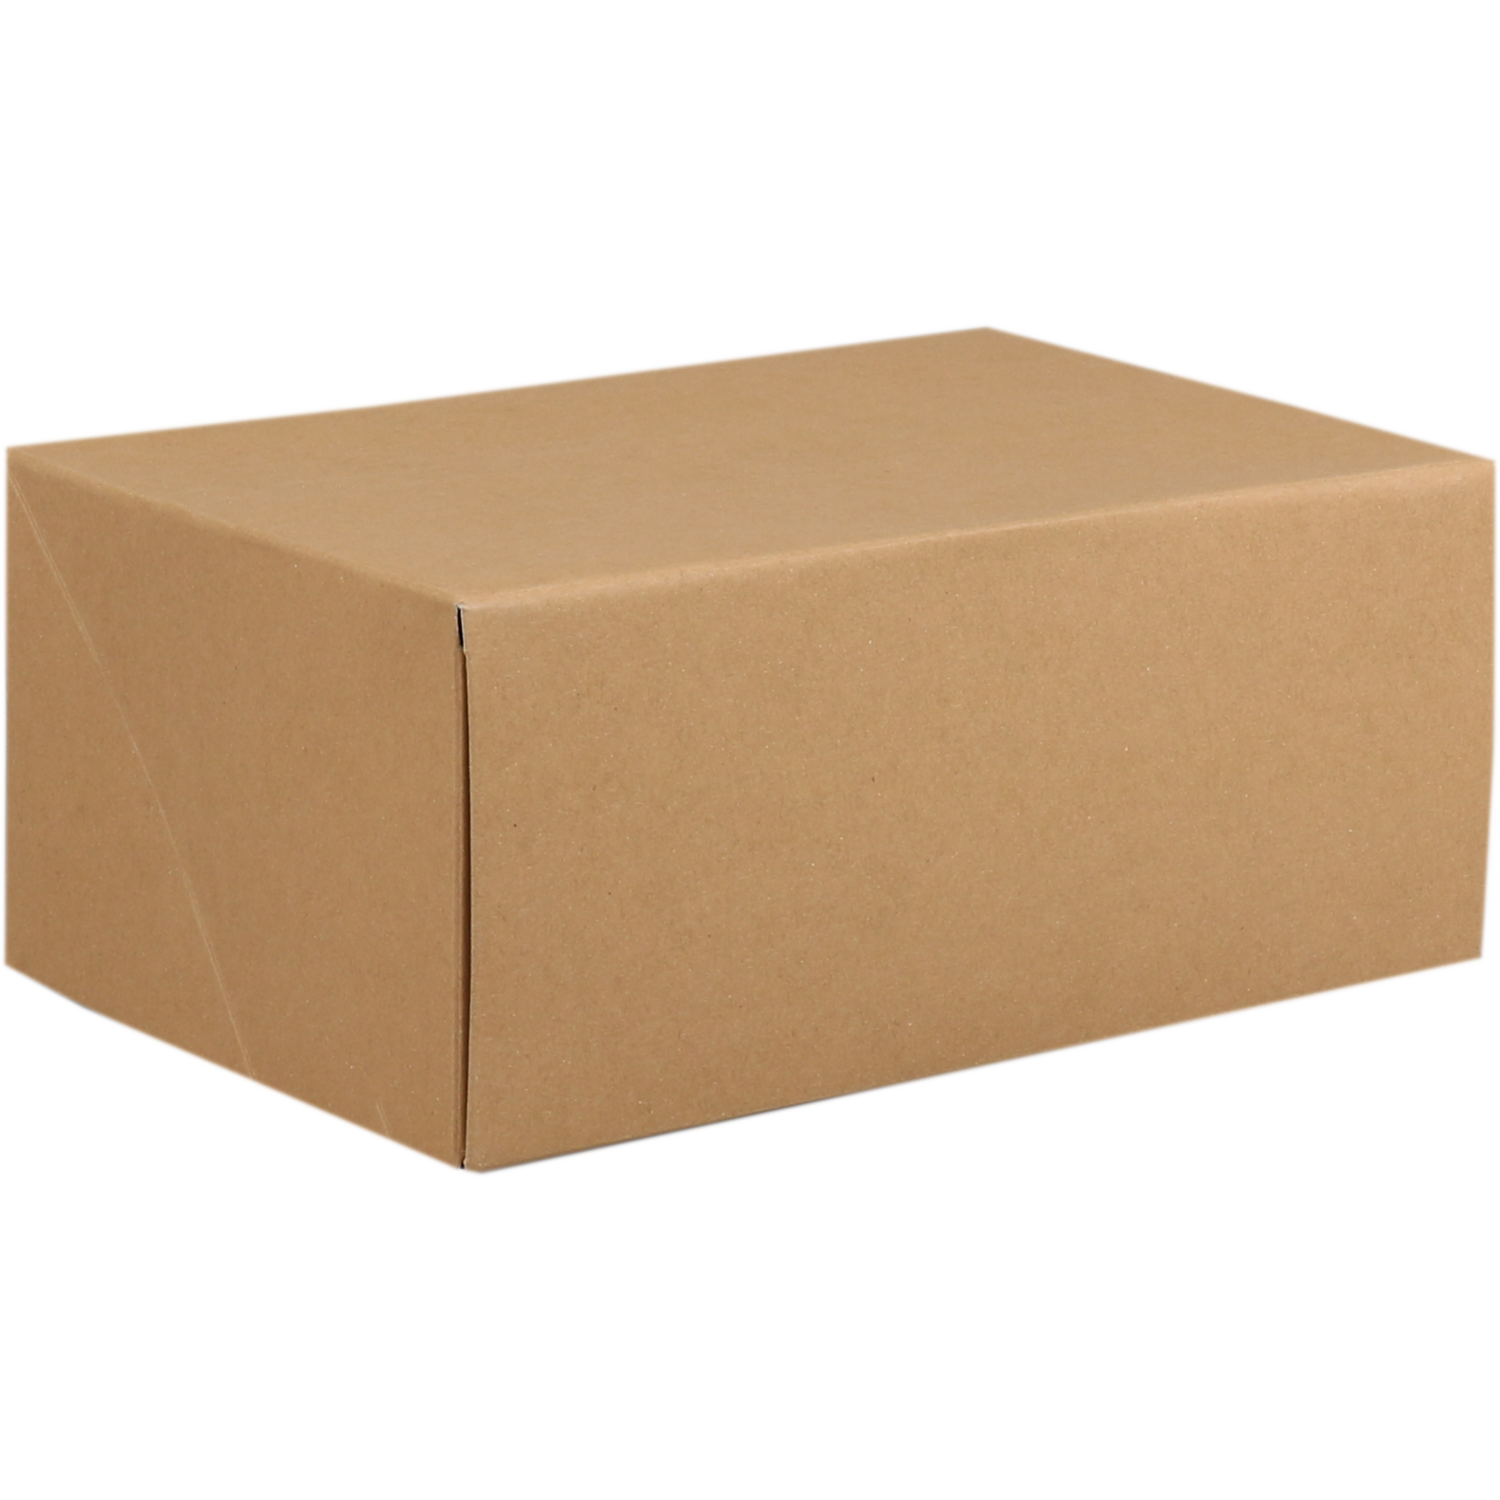  Cake box, cardboard, 21x14x9cm, brown  1